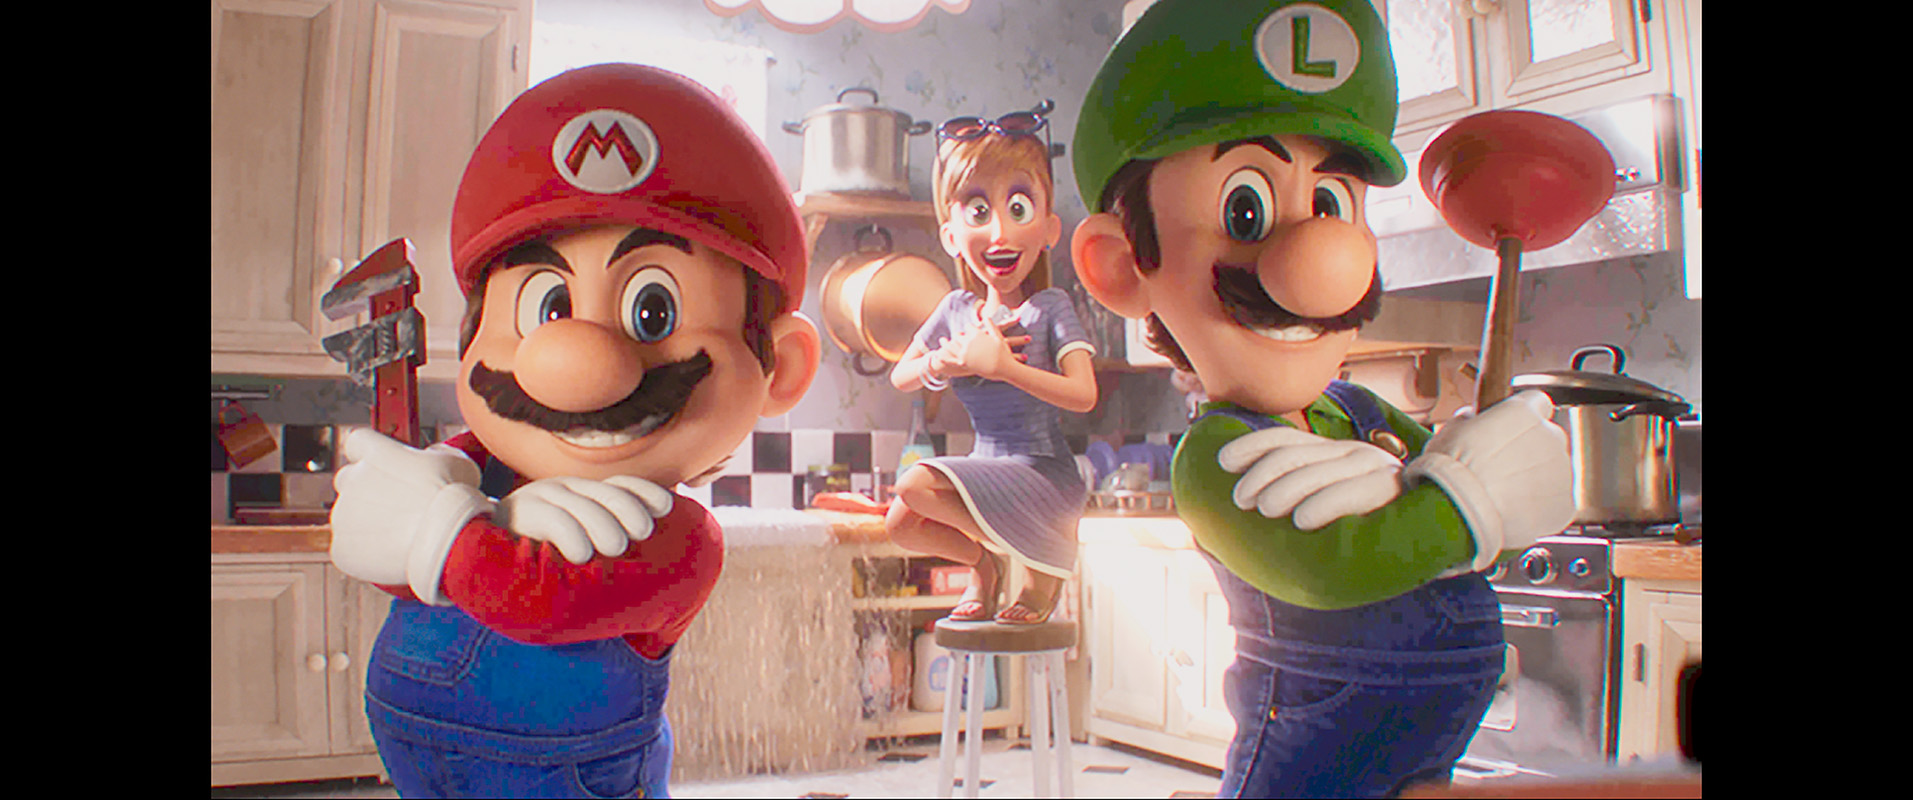 Mario e Luigi em comercial em Super Mario Bros. O Filme